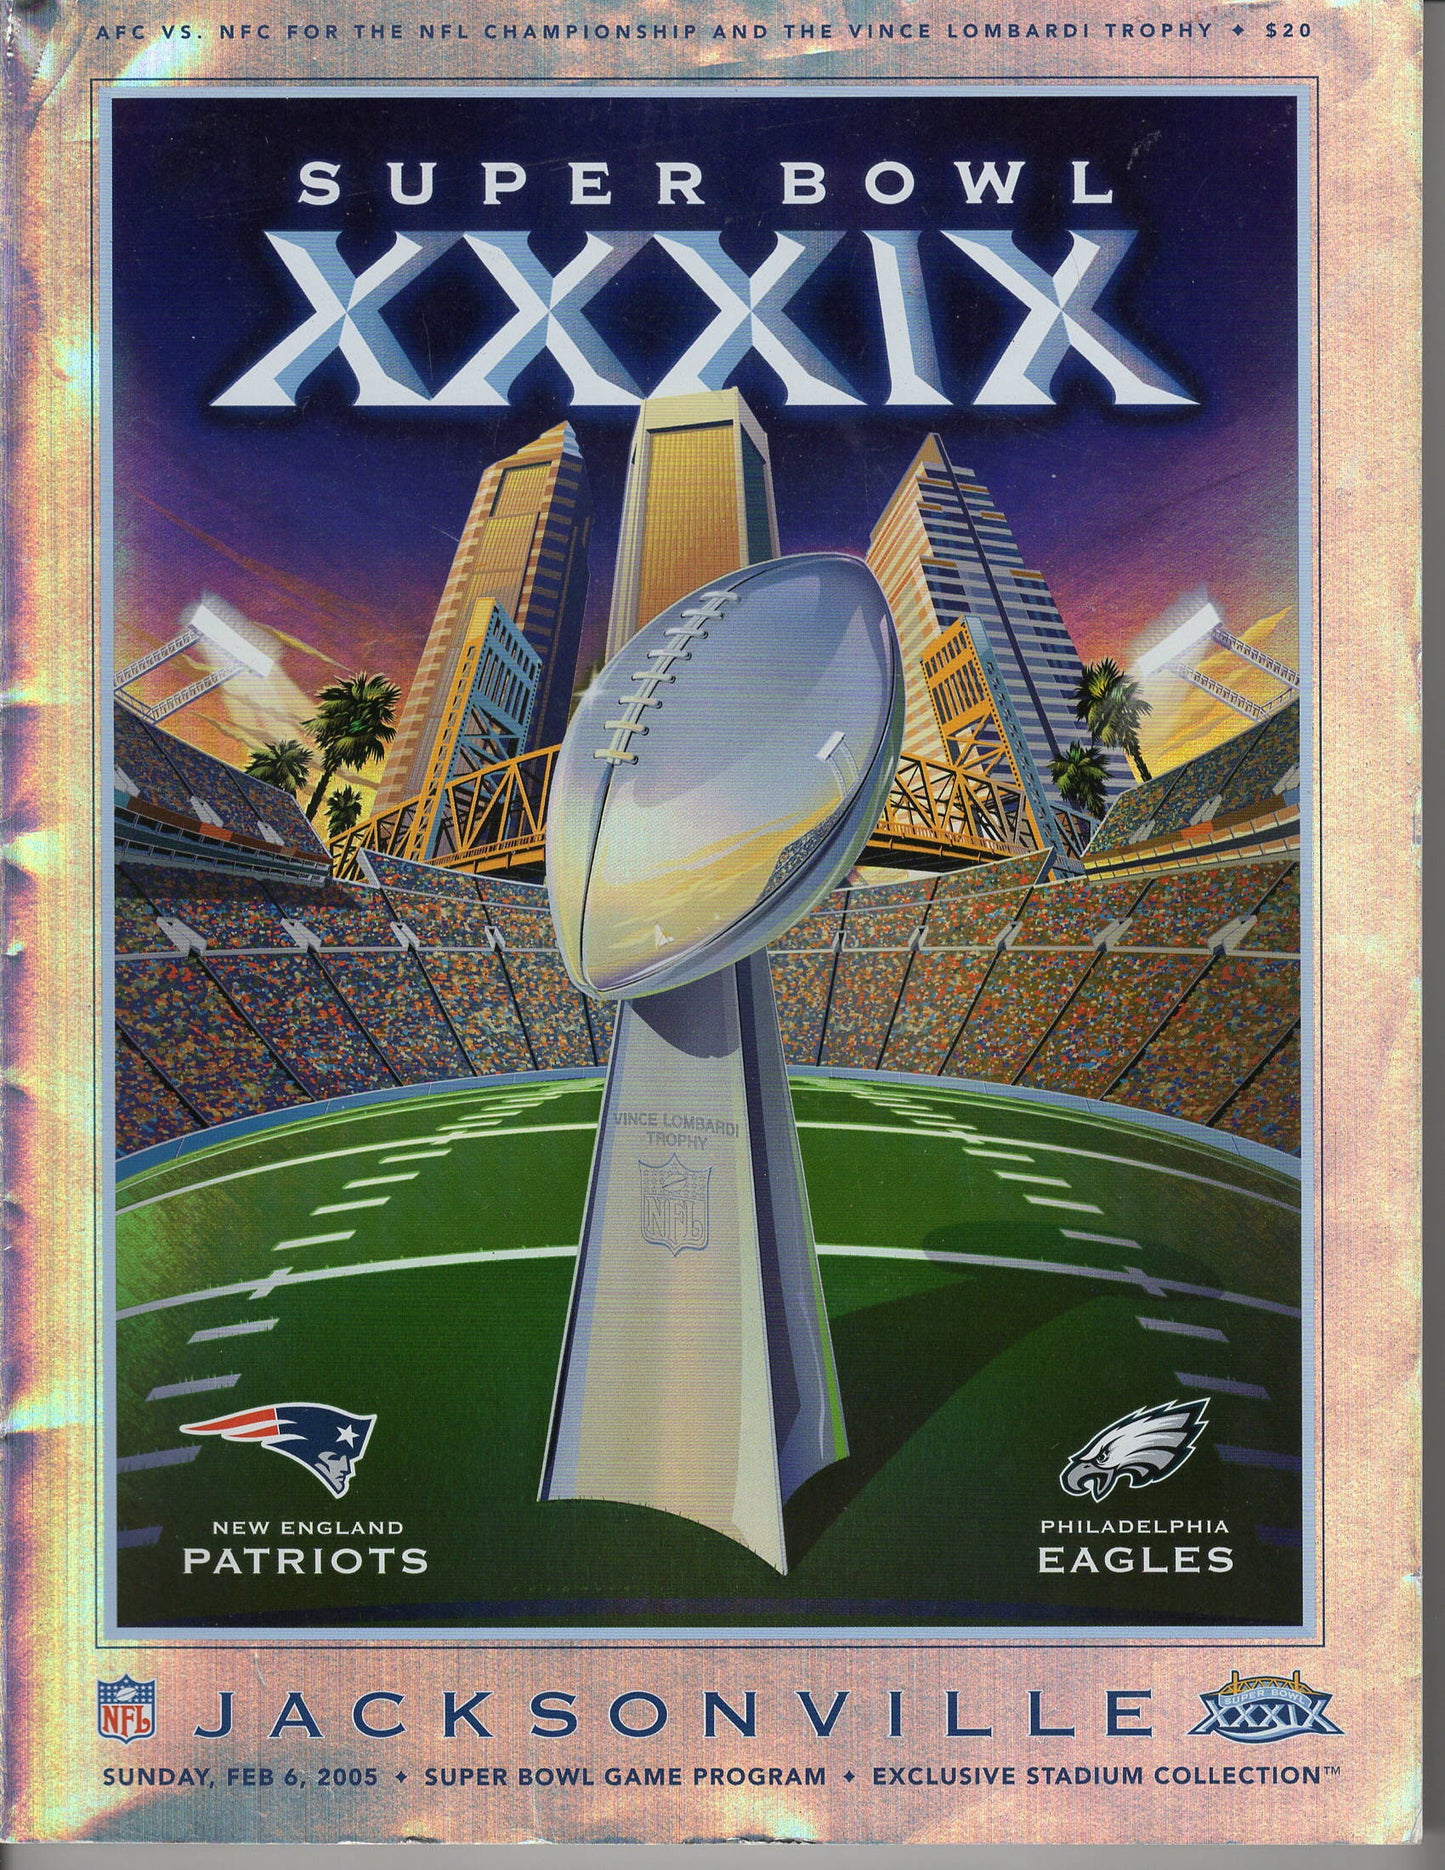 02 06 2005 Super Bowl Program Exclusive Stadium Edition